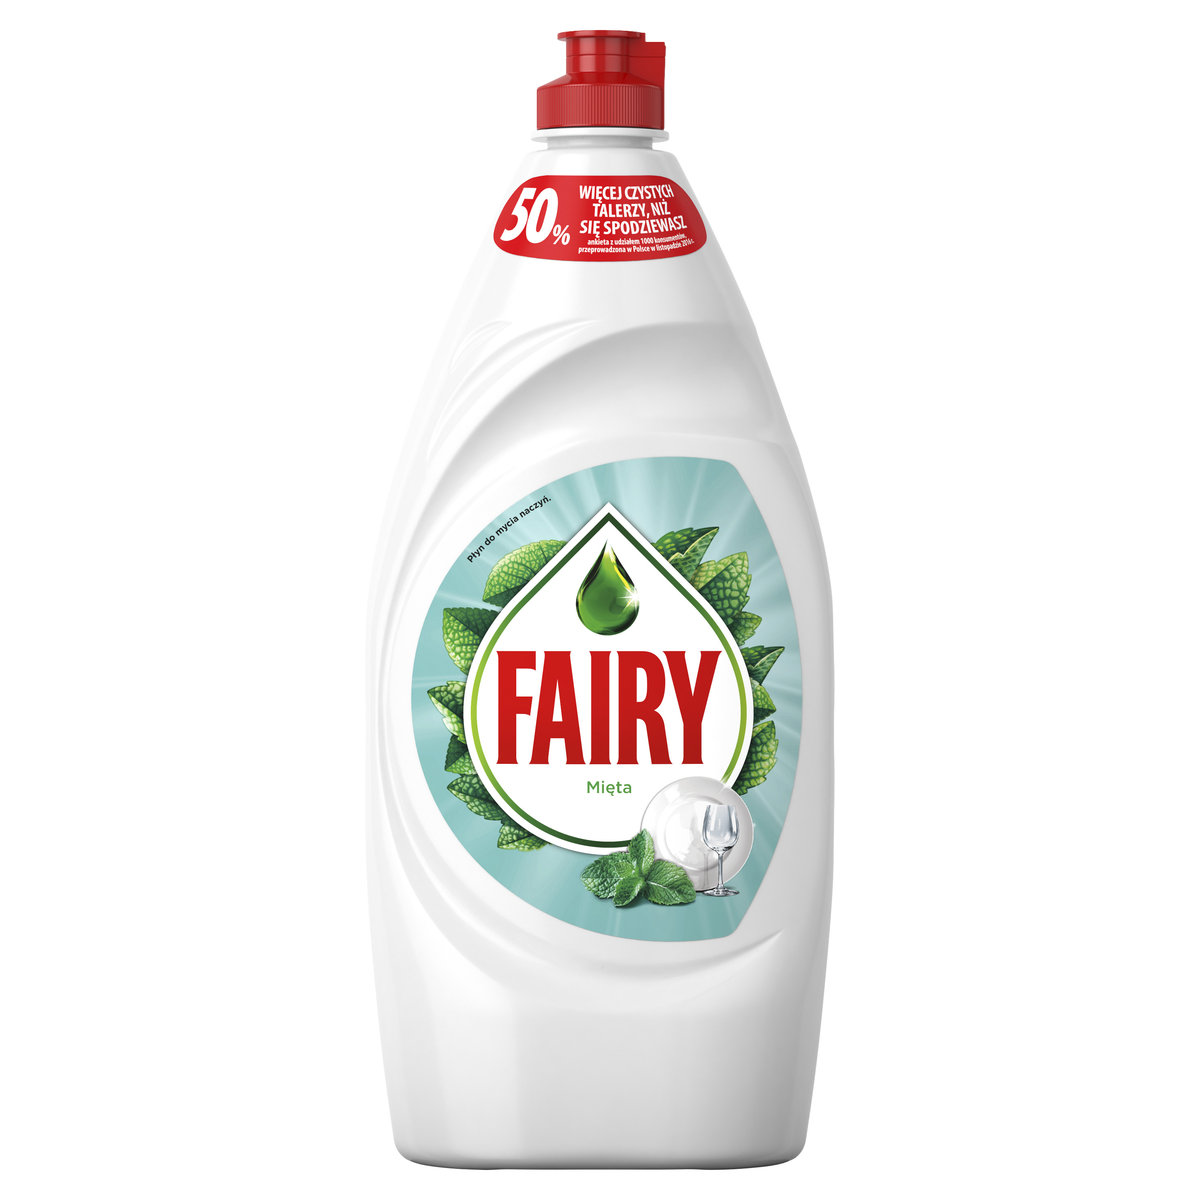 Zdjęcia - Ręczne zmywanie naczyń Fairy Mięta Płyn do mycia naczyń, 850ml 